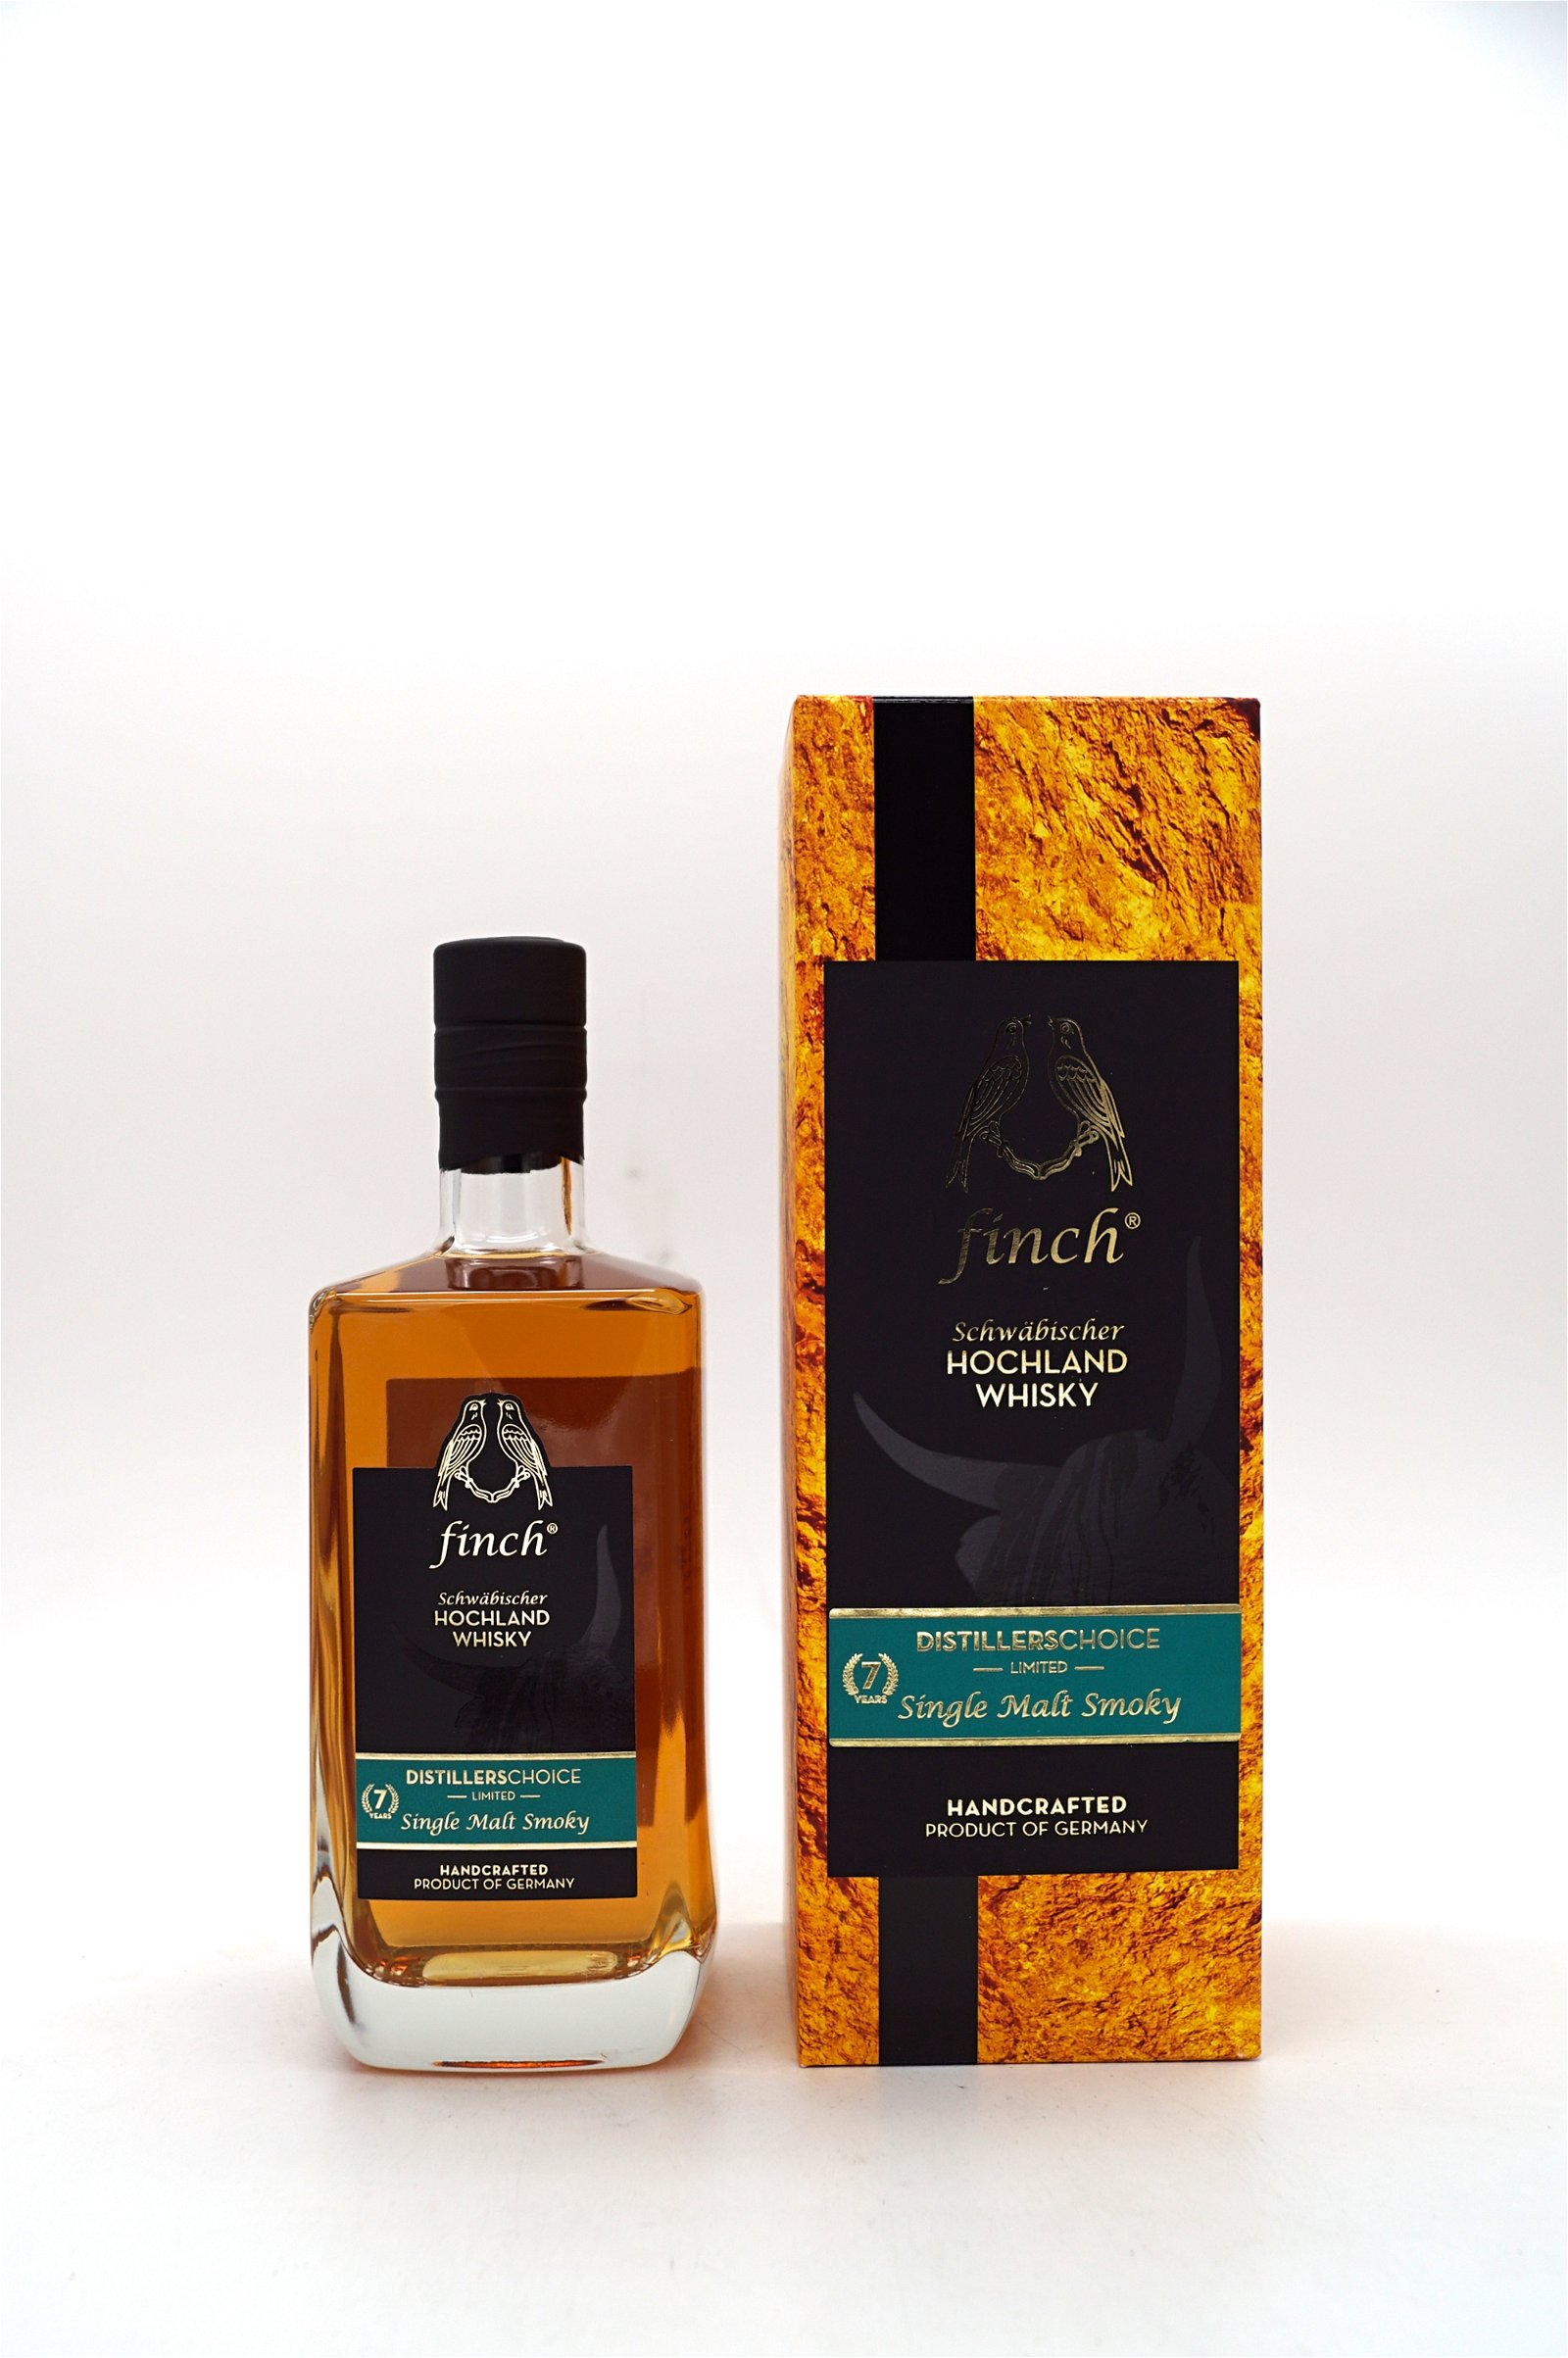 Finch 7 Jahre Distillers Choice Limited Smoky Single Malt Schwäbischer Hochland Whisky